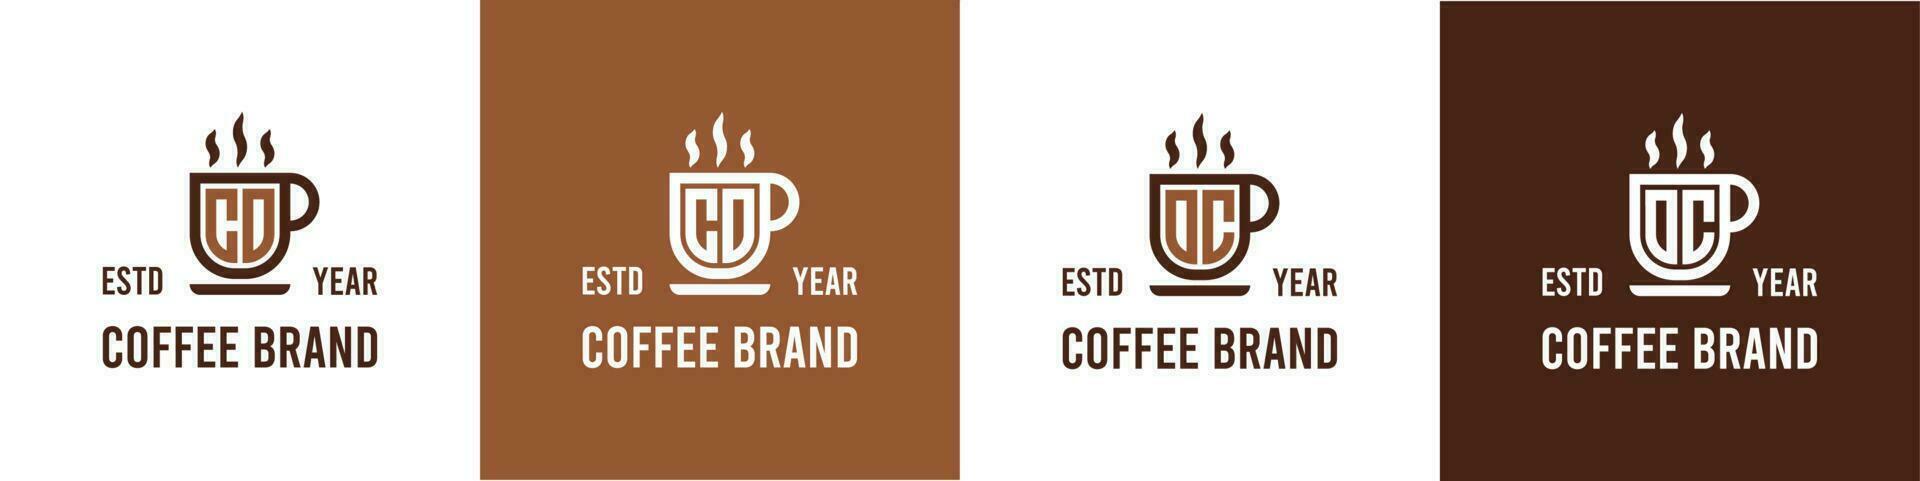 carta co e oc café logotipo, adequado para qualquer o negócio relacionado para café, chá, ou de outros com co ou oc iniciais. vetor